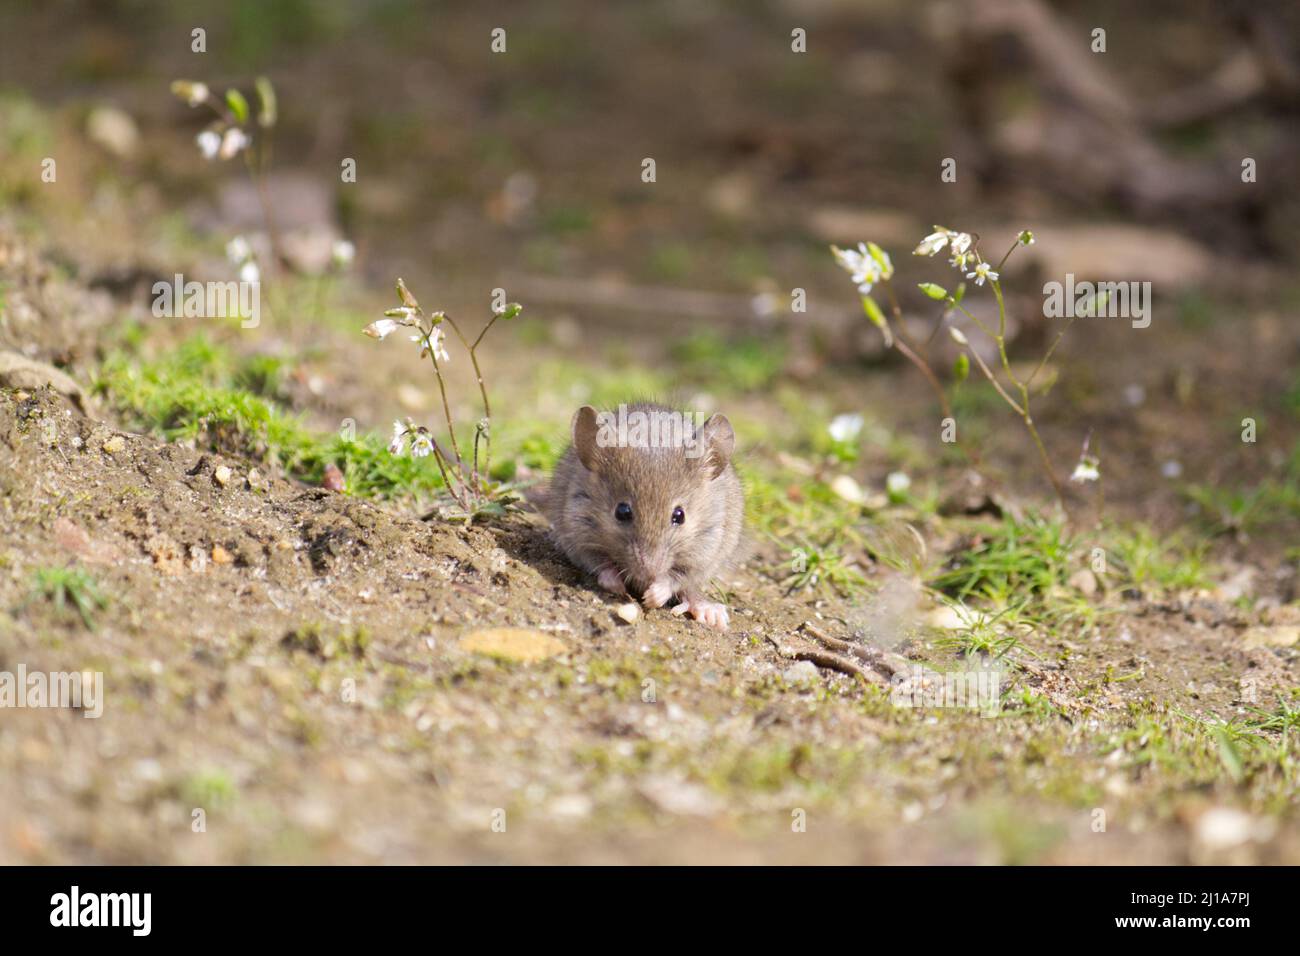 Lindo ratón de casa de europa occidental pequeño gris-marrón (Mus musculus domesticus) en busca de comida en la naturaleza Foto de stock